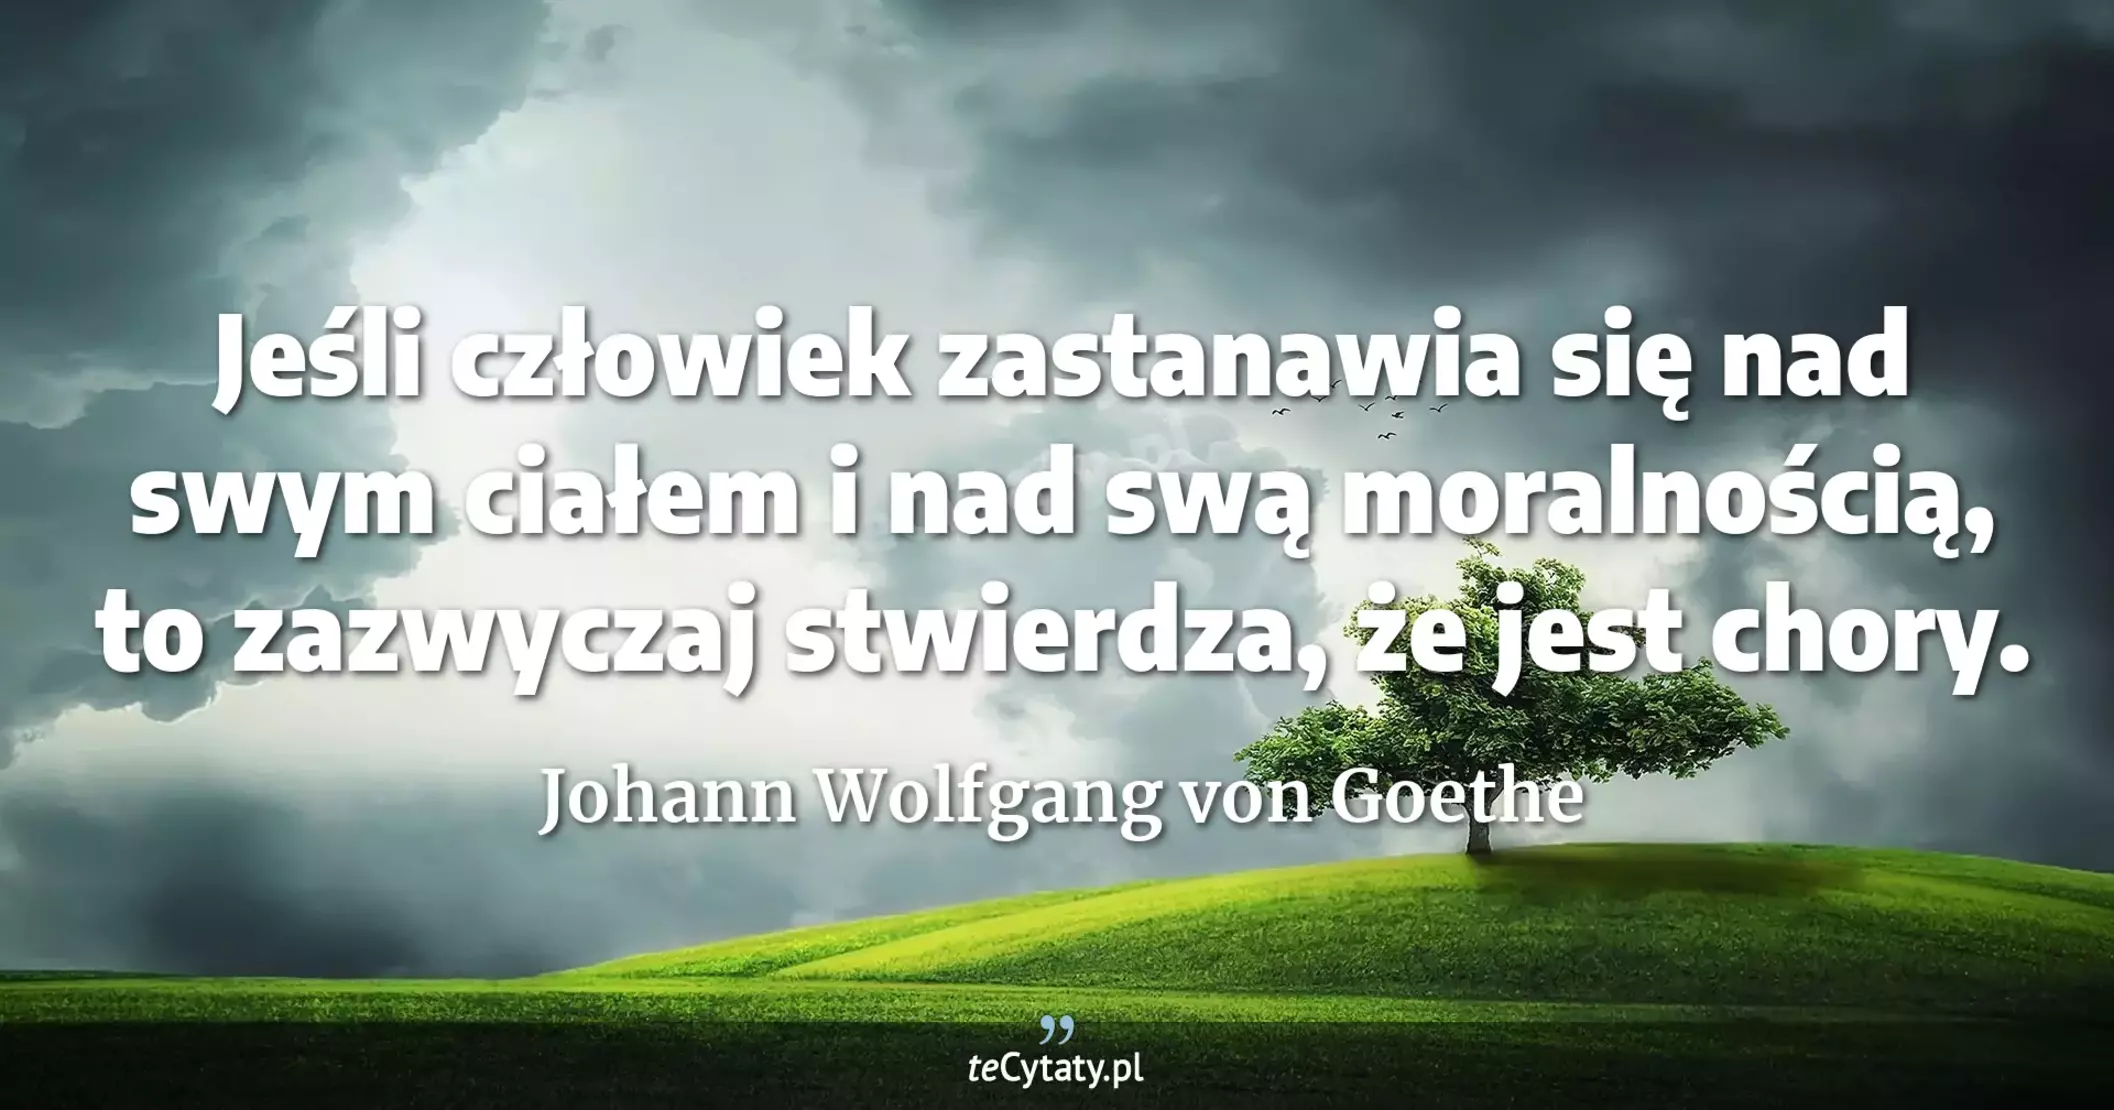 Jeśli człowiek zastanawia się nad swym ciałem i nad swą moralnością, to zazwyczaj stwierdza, że jest chory. - Johann Wolfgang von Goethe